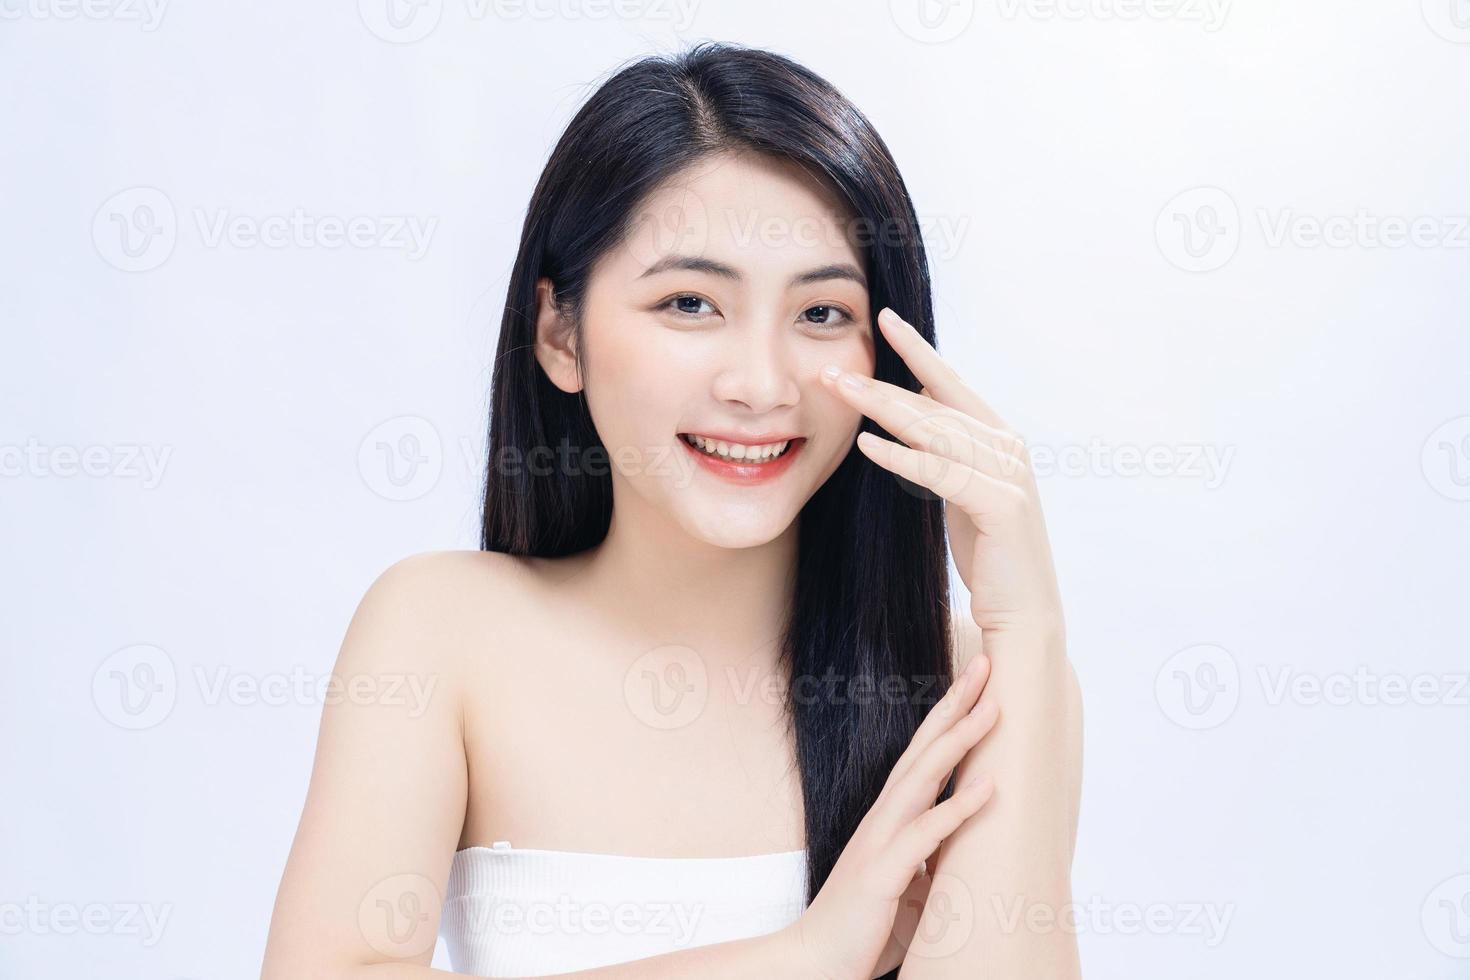 bellezza Immagine di giovane asiatico donna foto